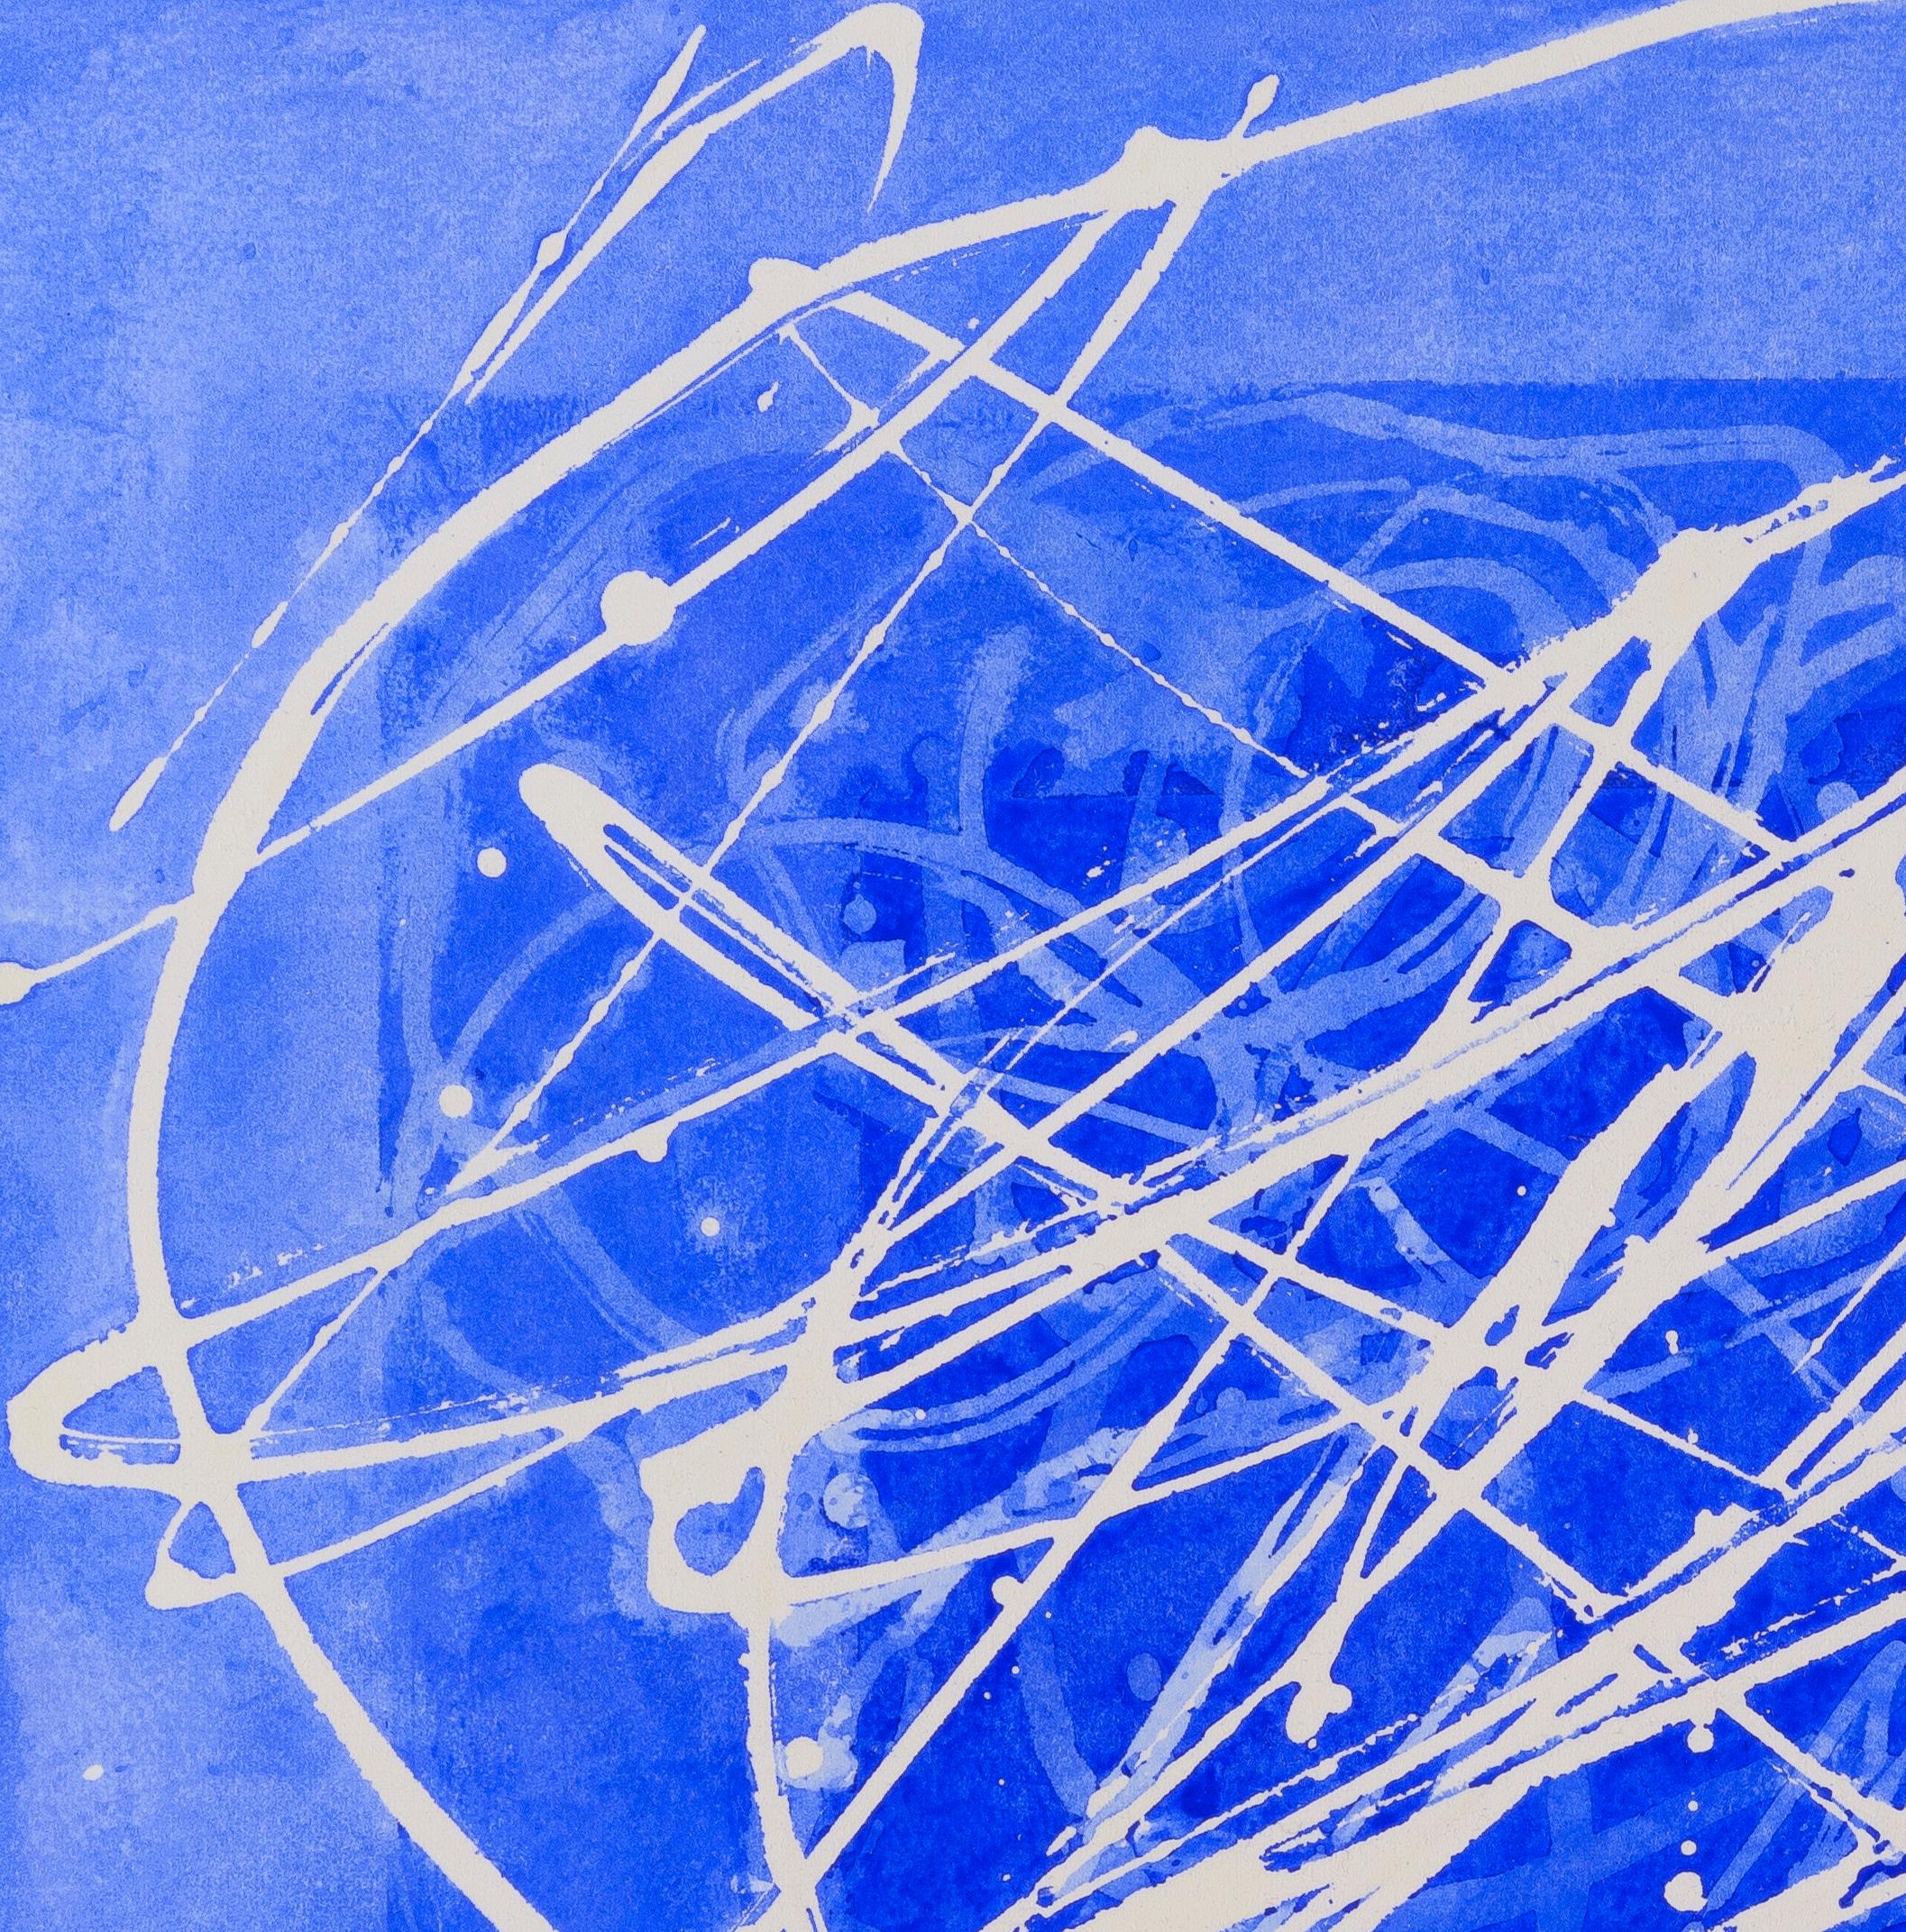 02H20: Blau-weißes abstraktes expressionistisches Gemälde/Zeichnung auf Papier, gerahmt, 02H20 (Abstrakt), Art, von Paula Cahill